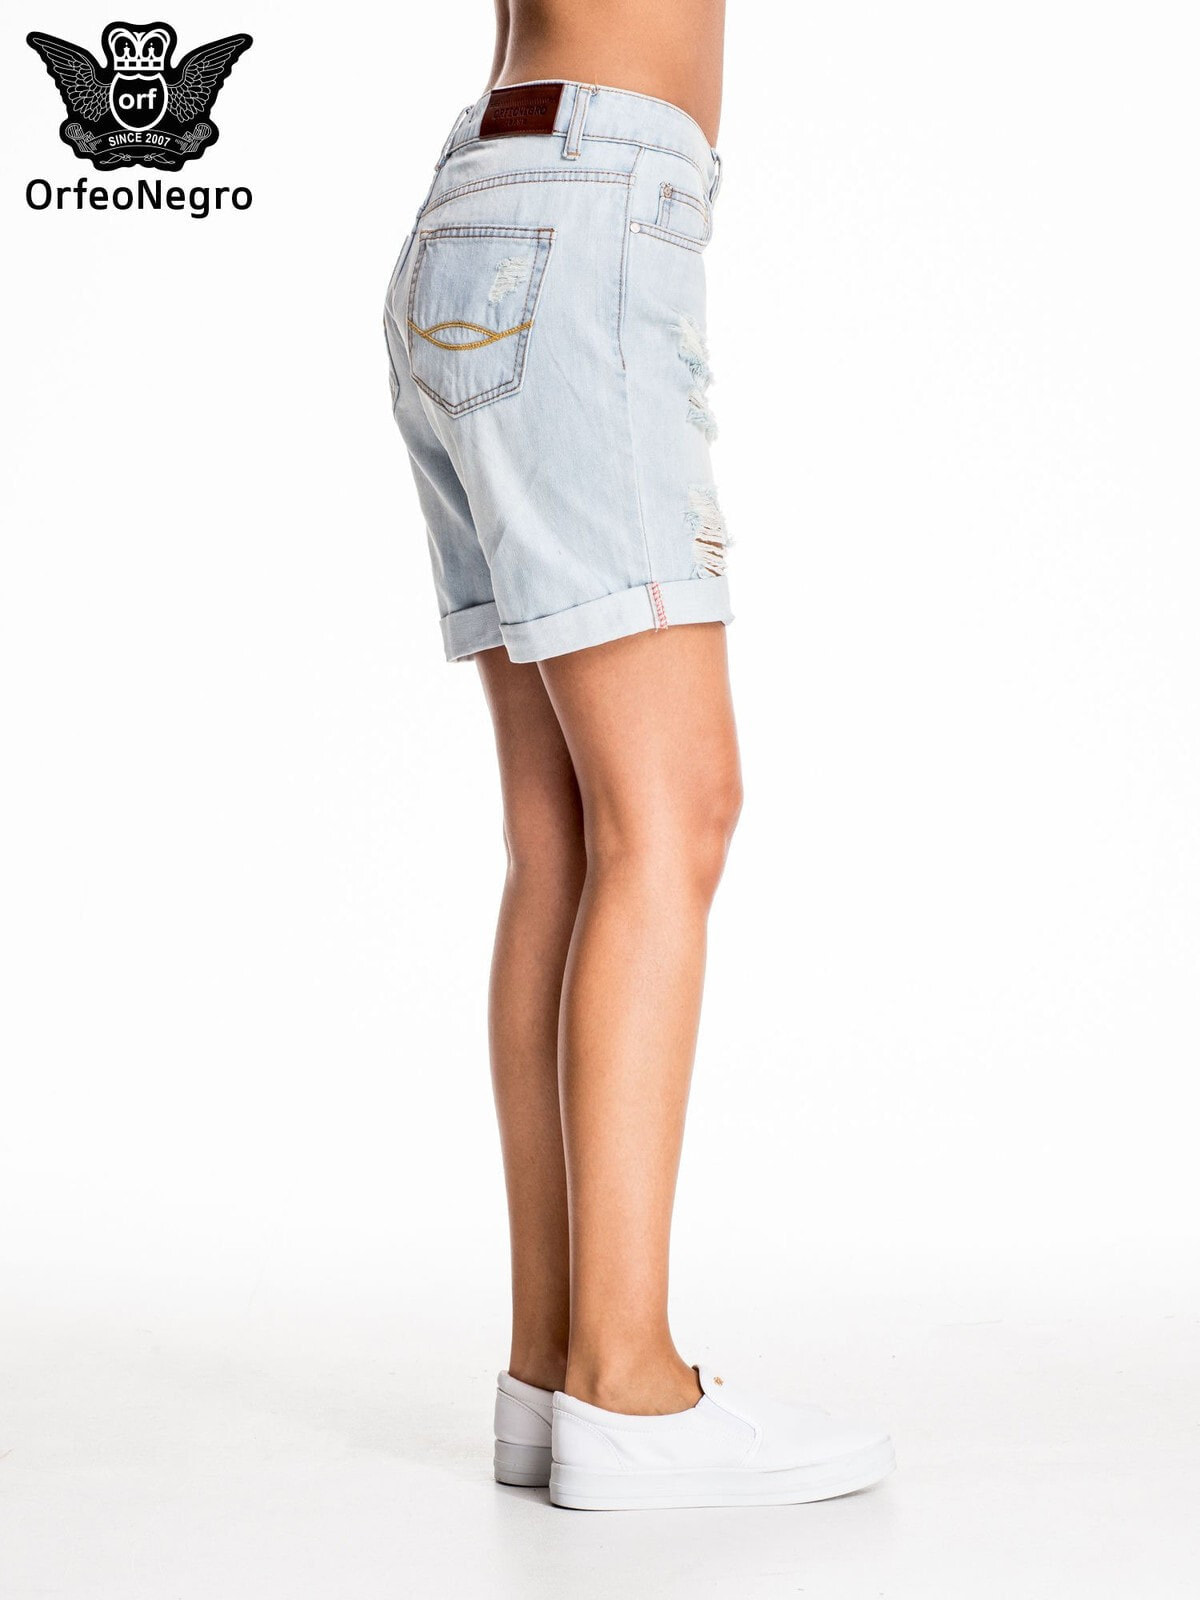 Женские джинсовые шорты длинные с прорезями Factory Price Factory PriceРазмер: 26 купить в интернет-магазине ShopoTam.com, женские шорты FactoryPrice